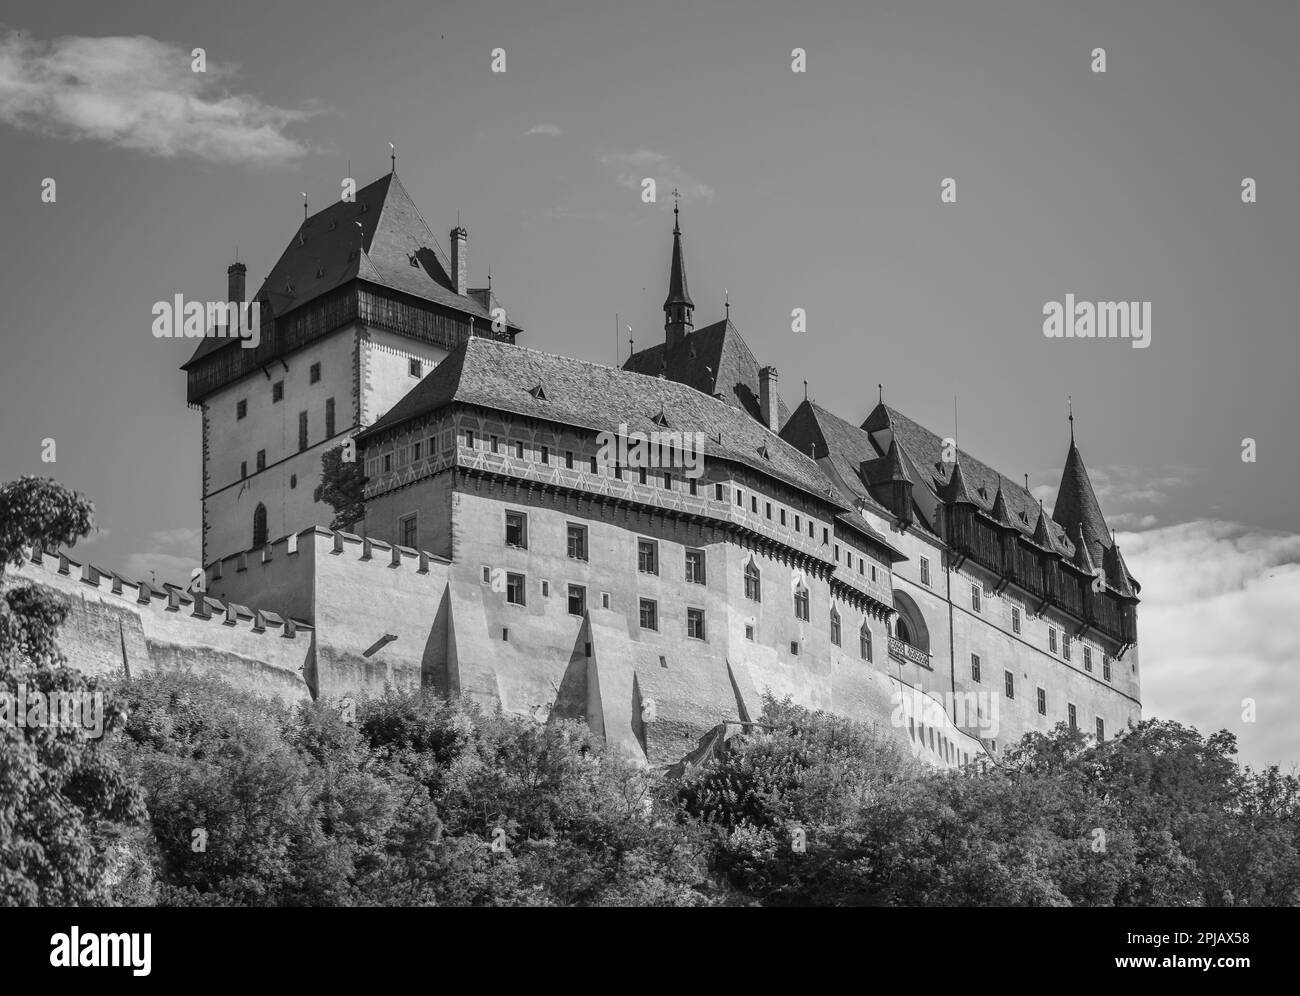 KARLSTEJN, REPUBBLICA CECA, EUROPA - Castello di Karlstejn in Boemia. Foto Stock